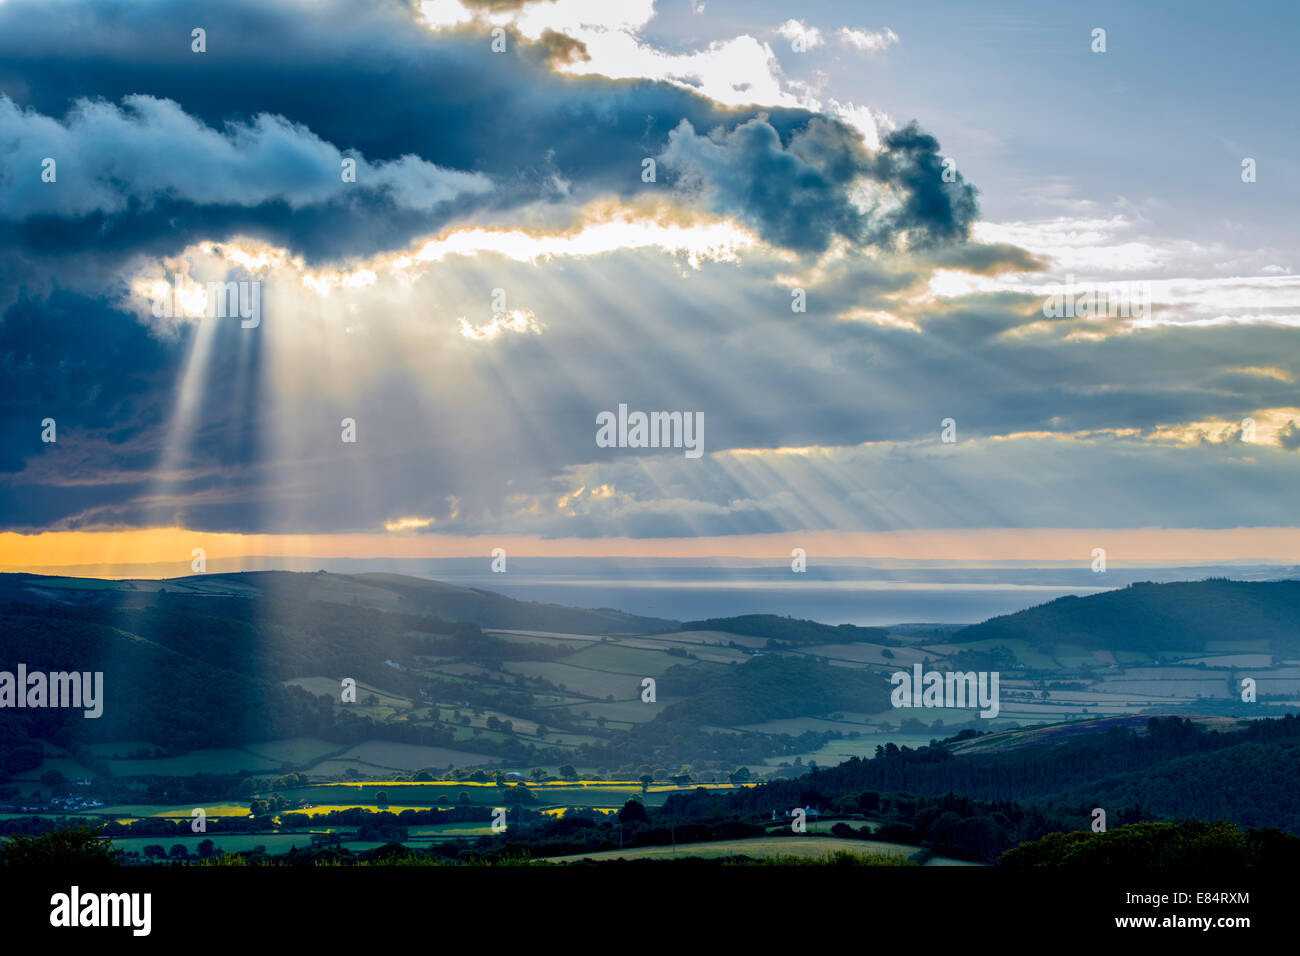 Faisceaux de lumière percent la couche de nuages sur Exmoor, ce qui porte l'espoir de beau temps. Banque D'Images